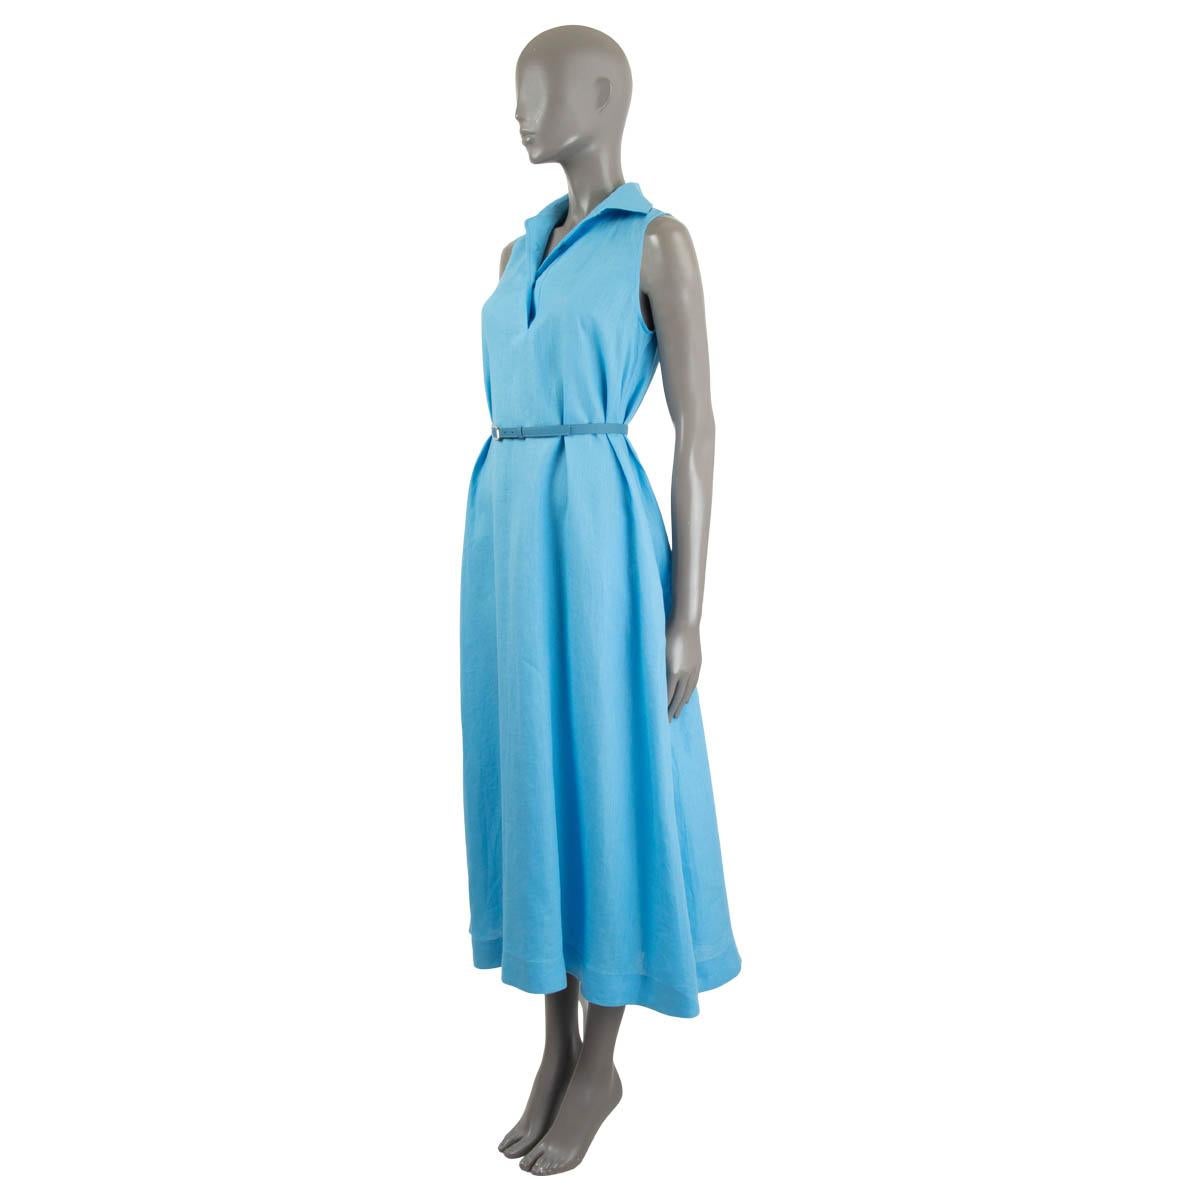 100% authentique Loro Piana Leyla Robe chemise sans manche ceinturée, lin bleu clair (100%). Le tissu est traité à l'aloe vera pour une conception infroissable que vous pouvez emballer facilement. Il est cintré à la taille à l'aide d'une ceinture en